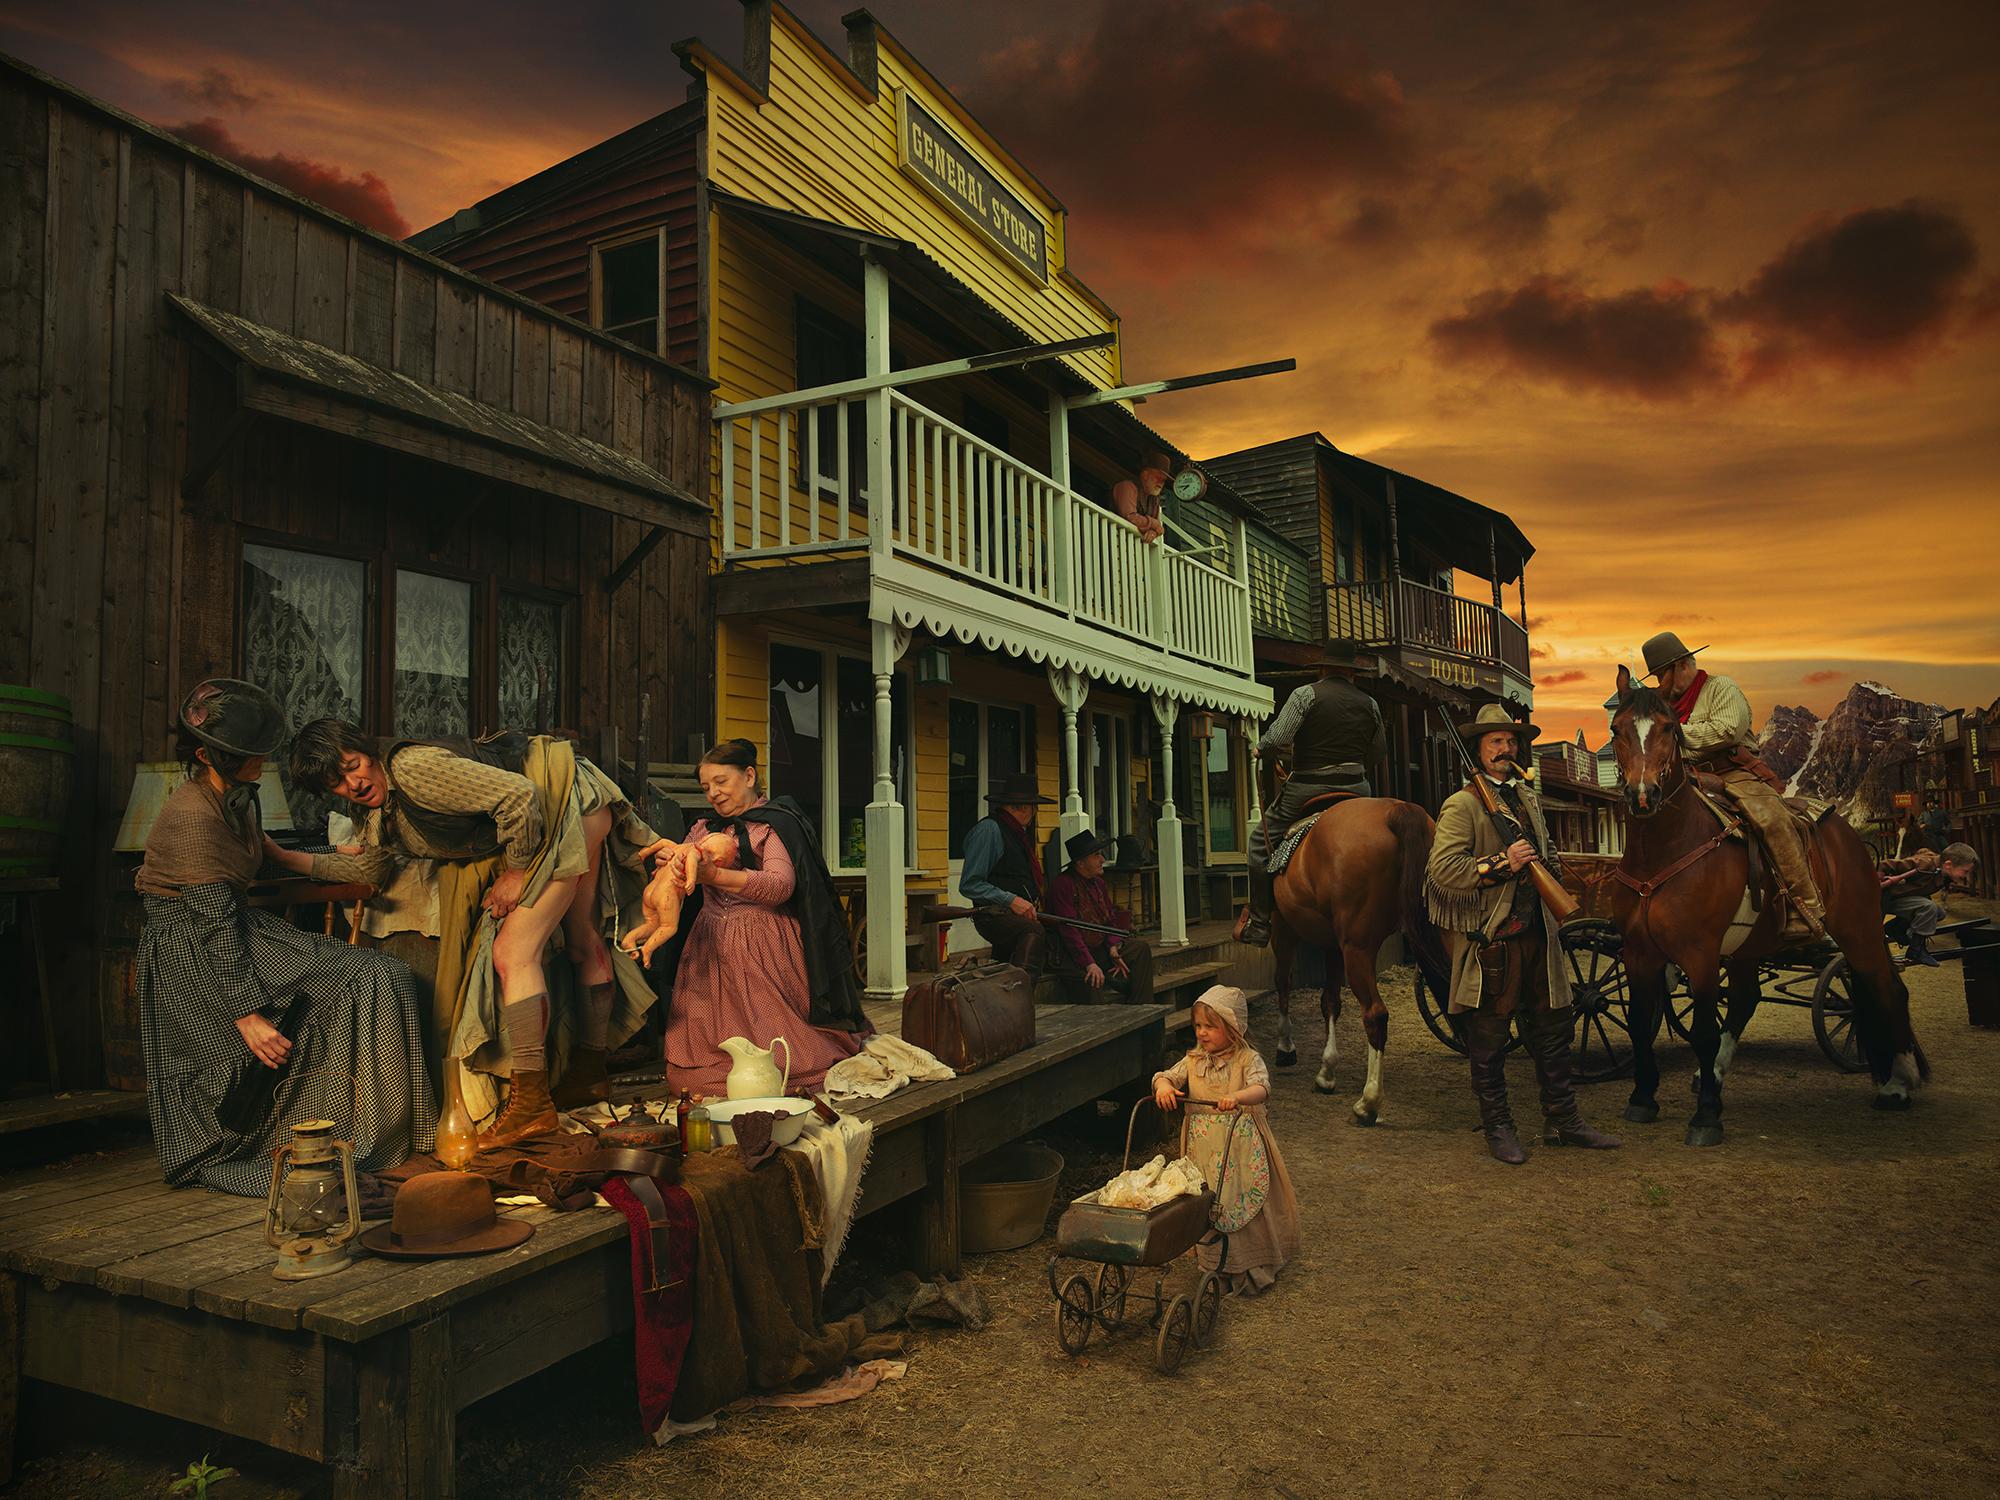 Color Photograph Natalie Lennard - Calamity Jane - Photographie de scène de naissance de l'Ouest sauvage + Calamity